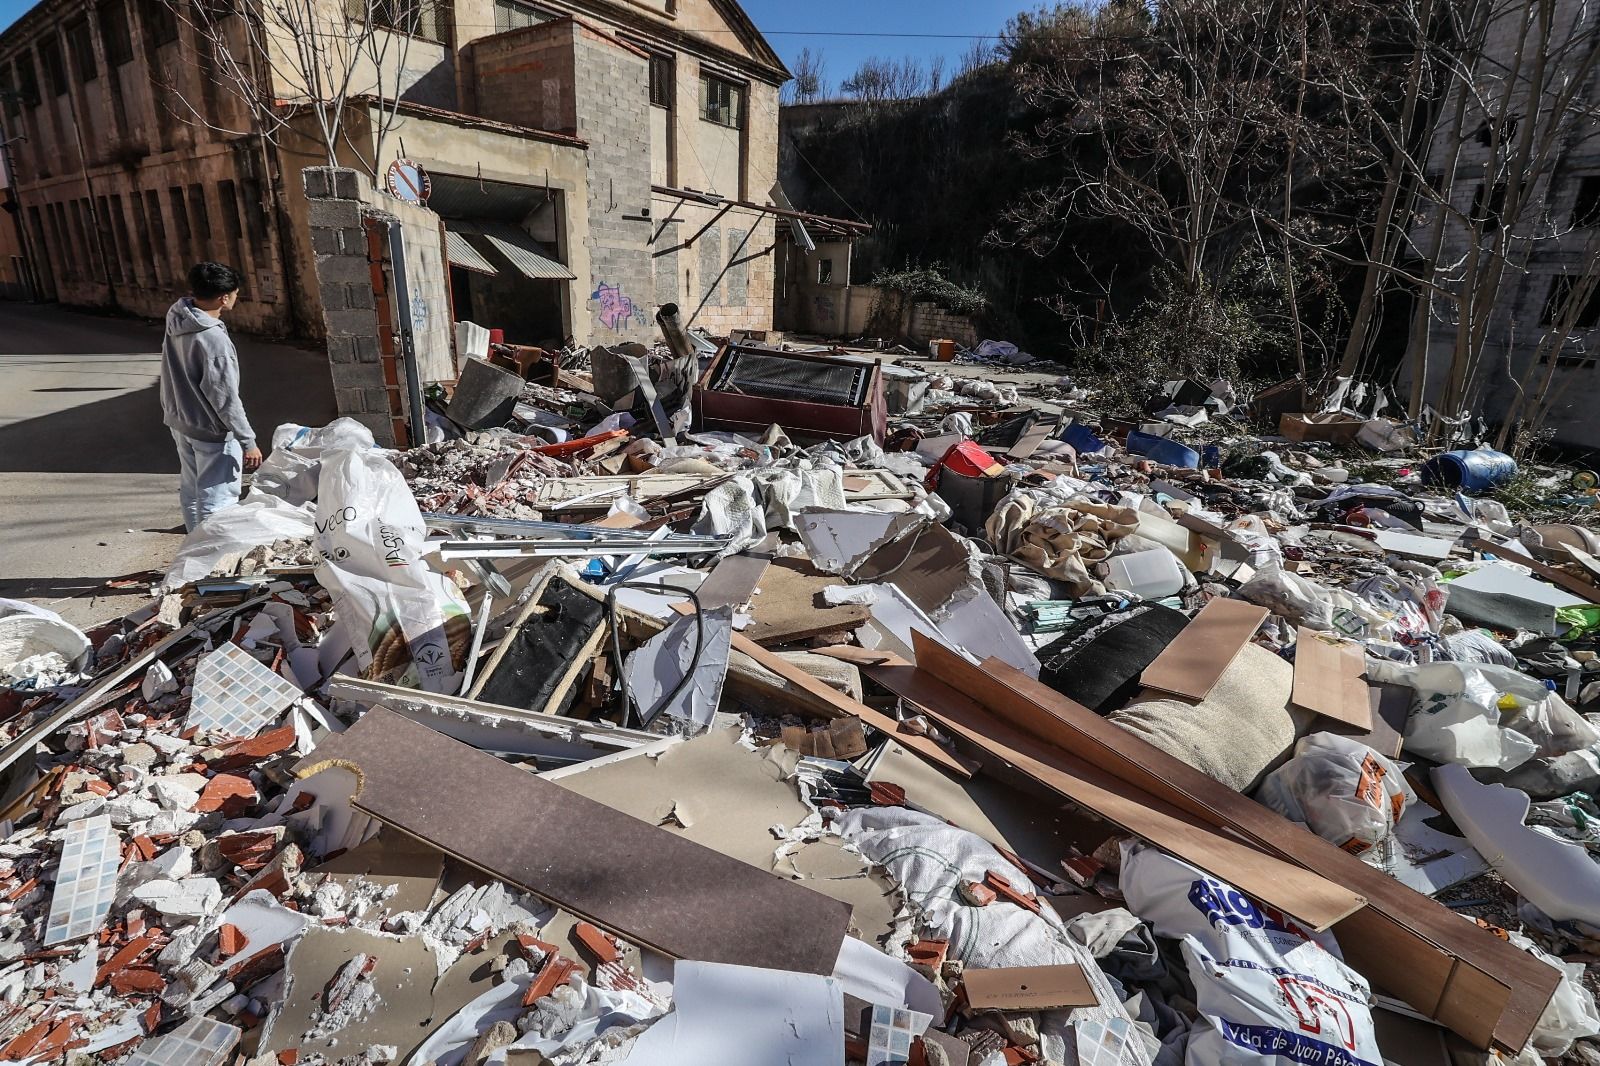 Escombros y basura acumulados junto al río Serpis y las fábricas de la calle Escalò de Alcoy